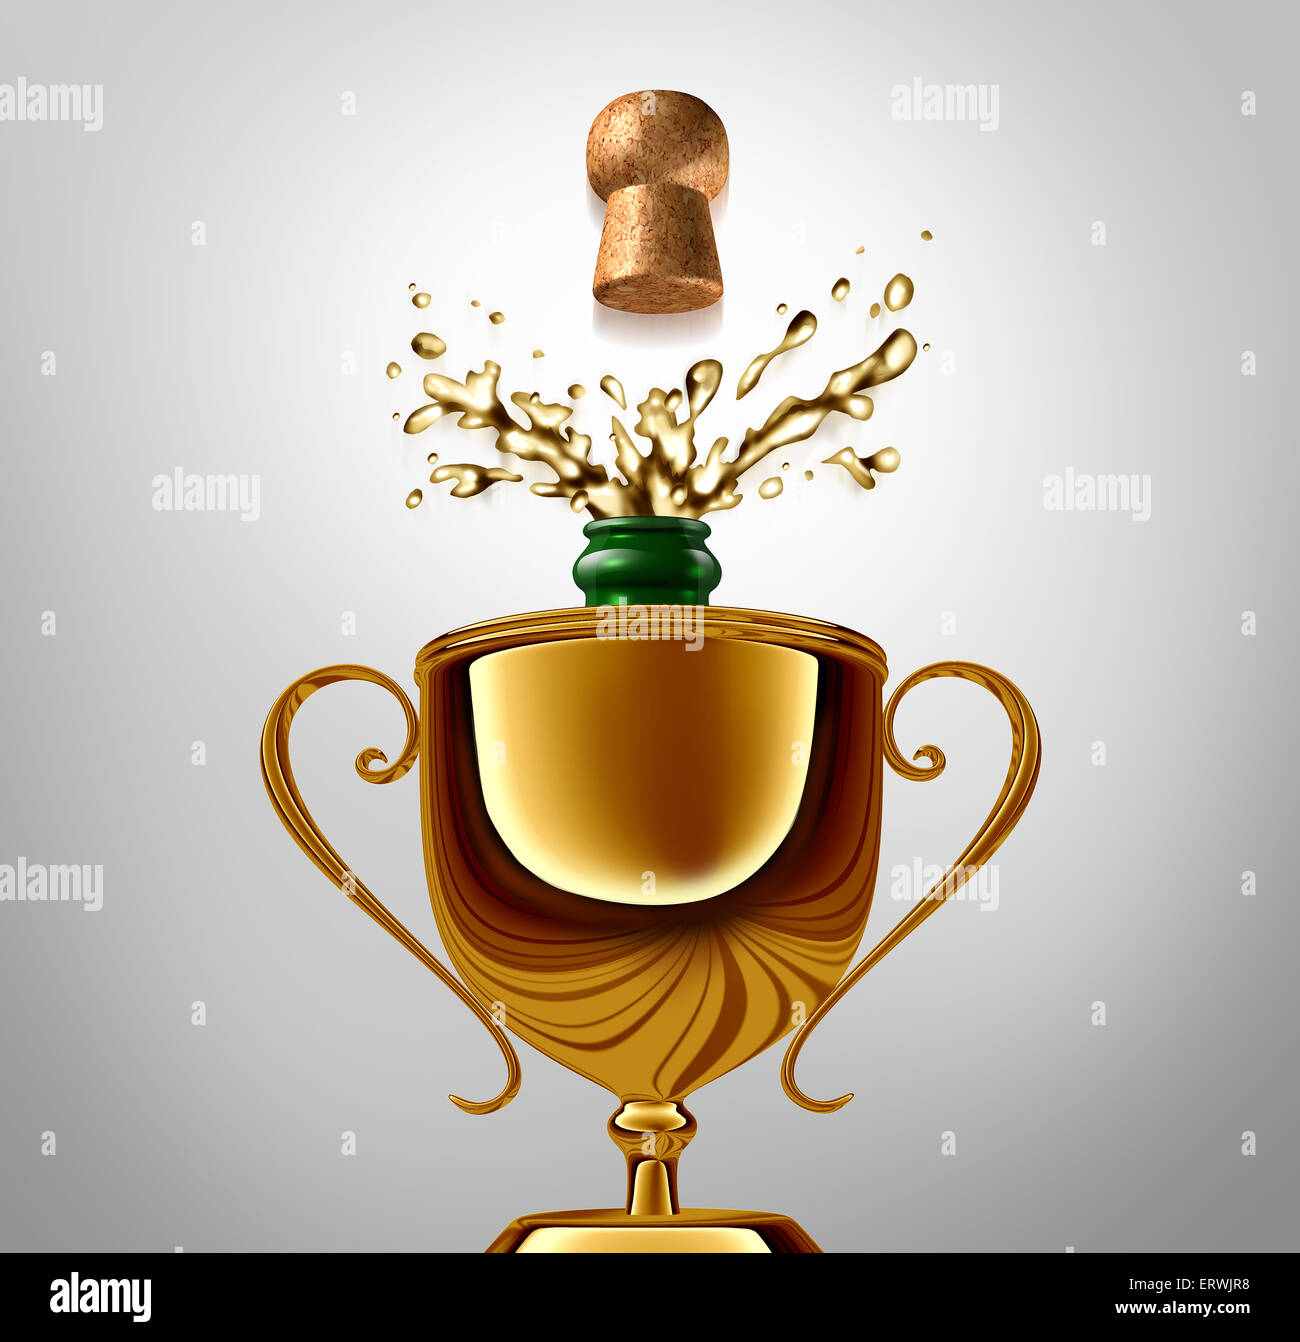 Célébration comme un concept gagnant du trophée d'or avec une bouteille de champagne débouchée à l'intérieur comme une réalisation métaphore et symbole de réussite célébrer une victoire ou heureux événement. Banque D'Images